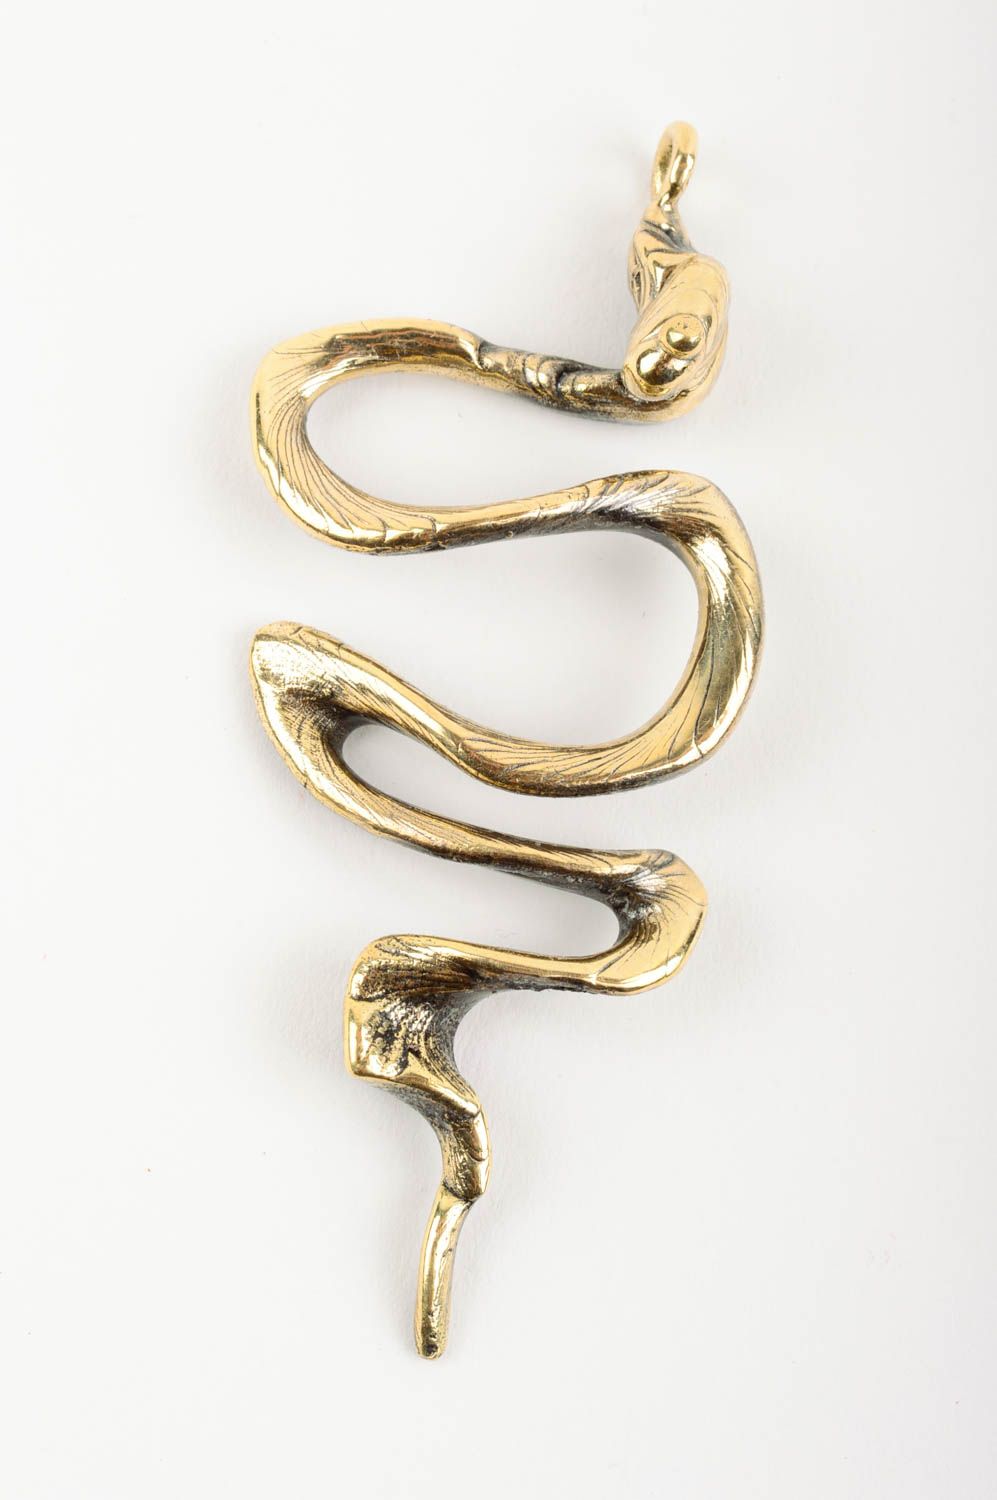 Латунная подвеска в виде змеи ручной работы оригинальный аксессуар для девушек фото 1